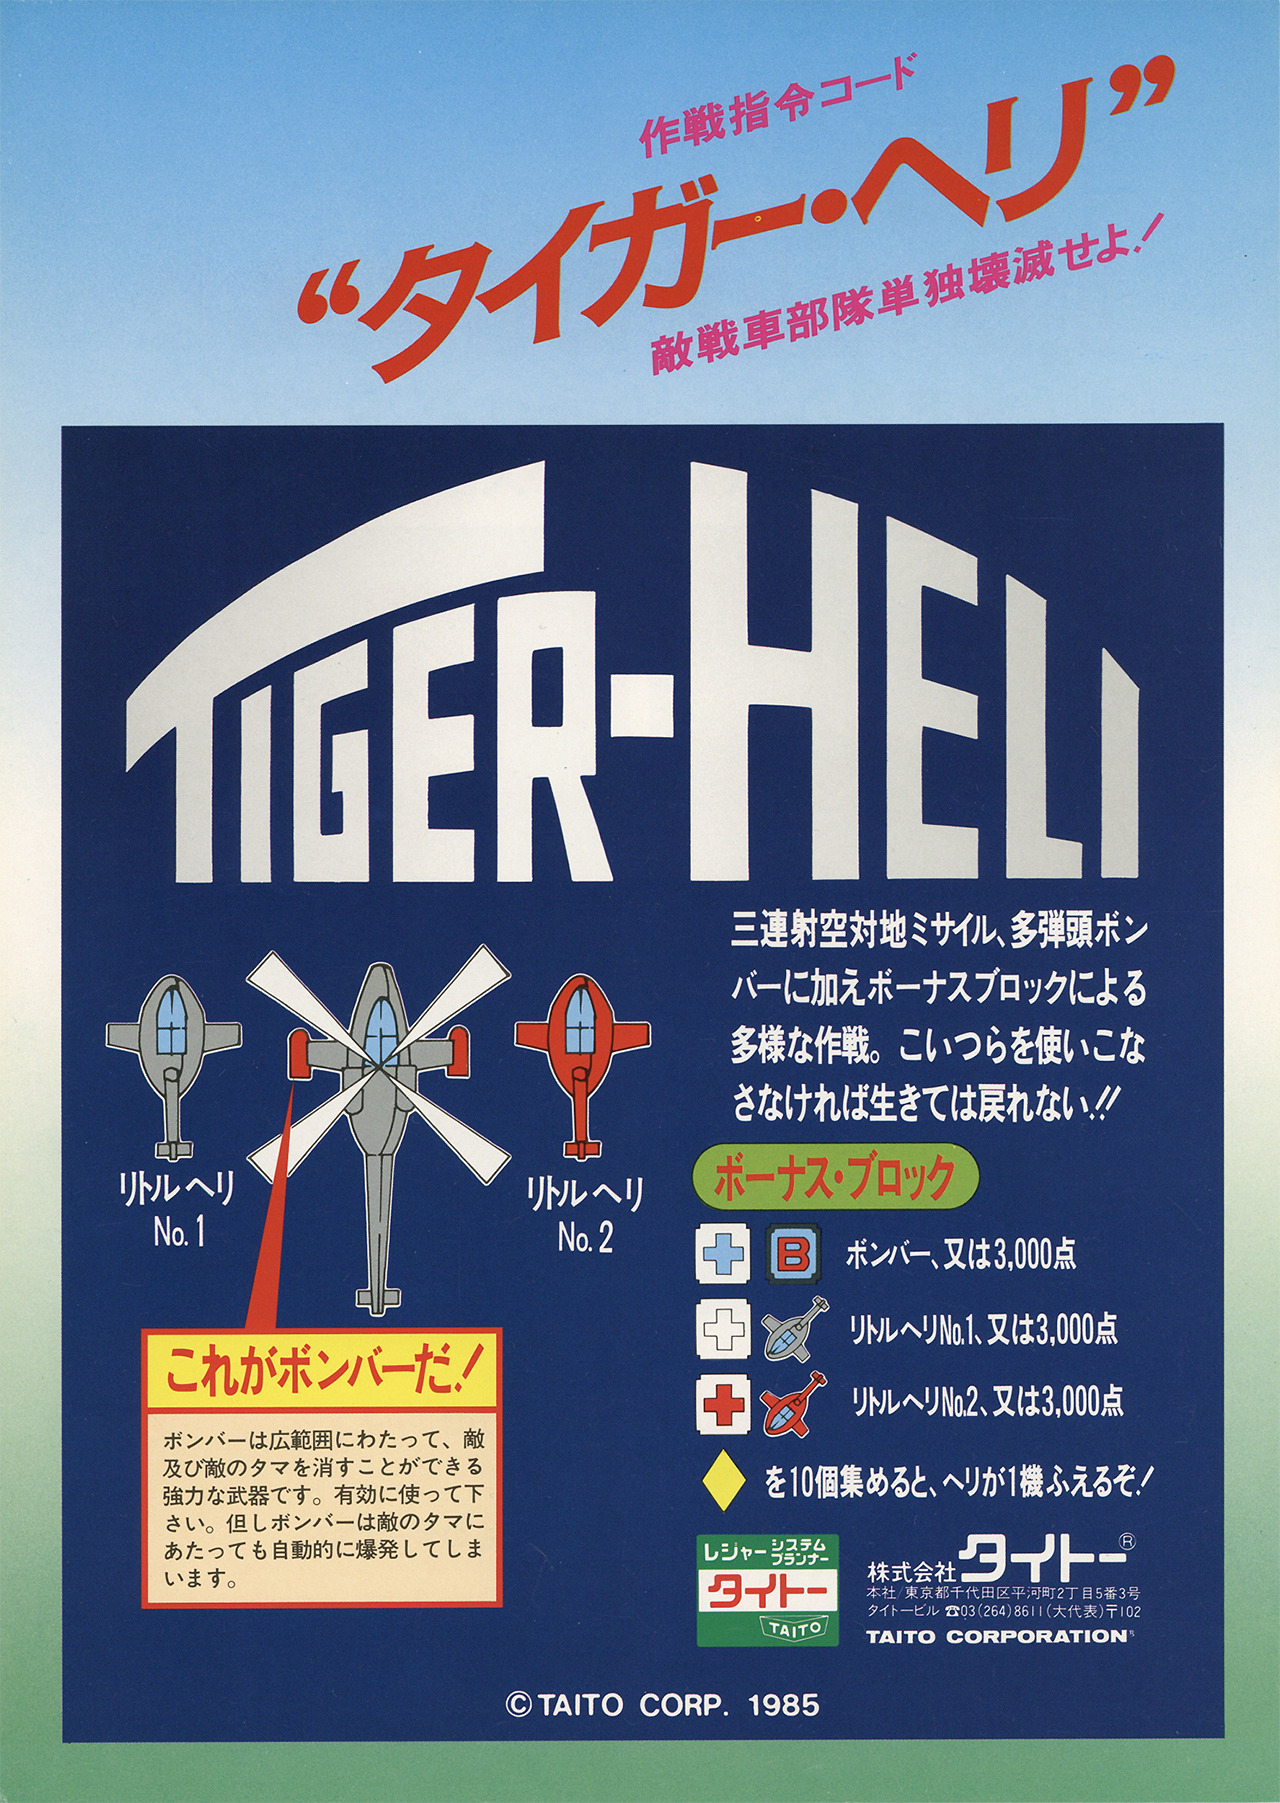 Tiger-Heli | Toaplan Wiki | Fandom